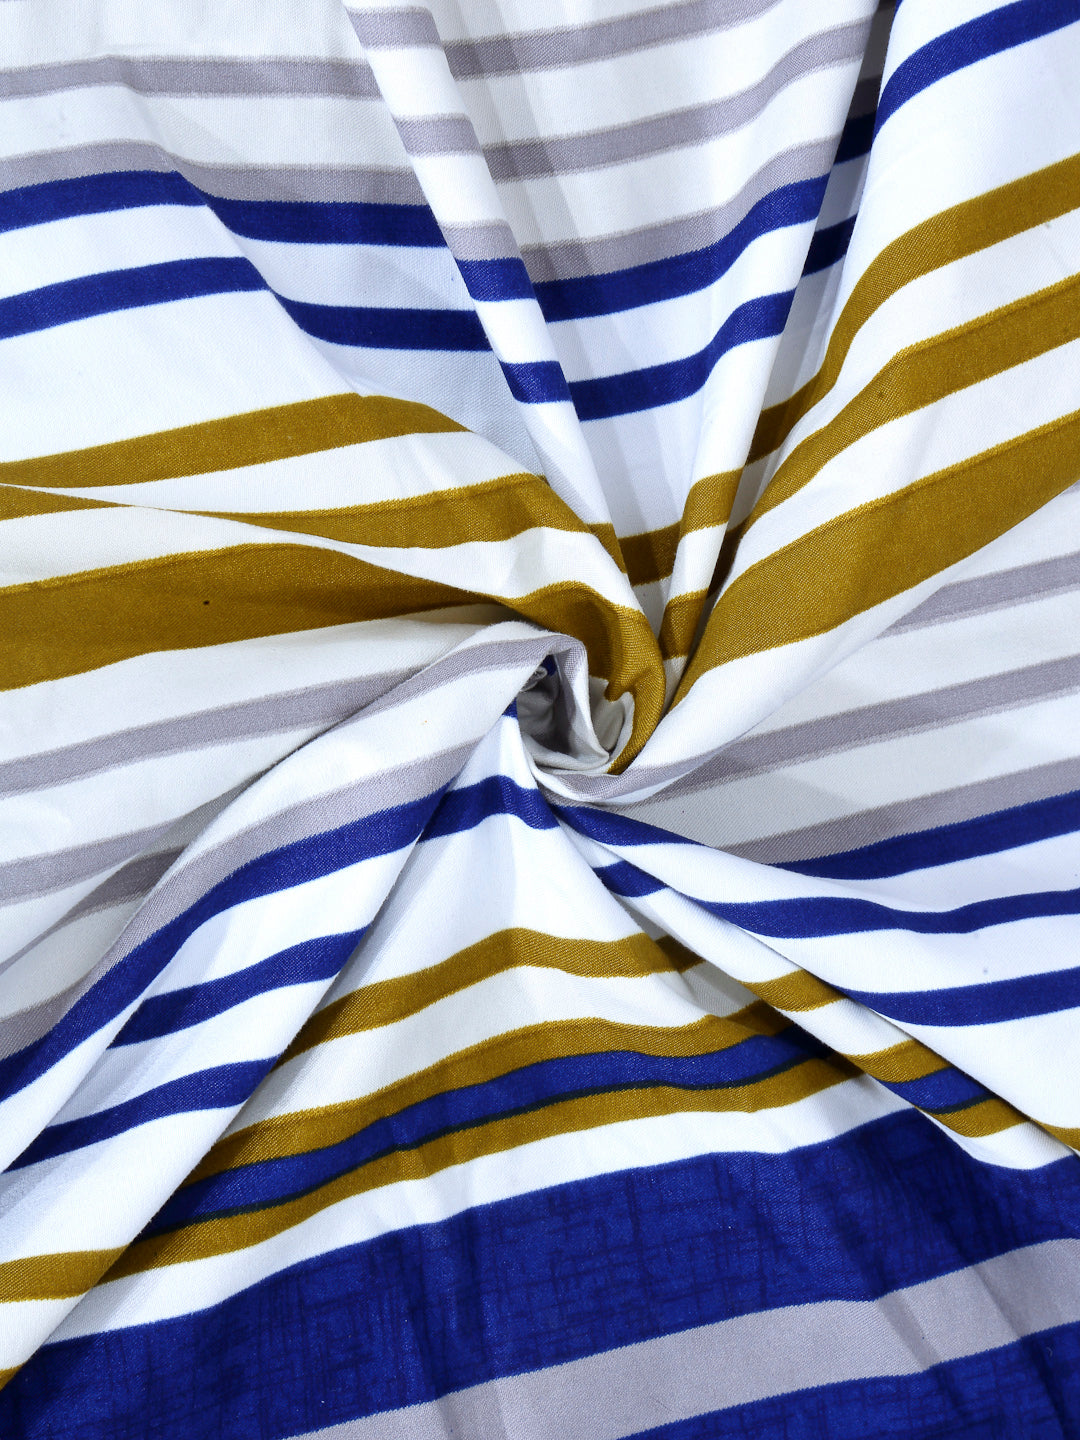 Arrabi Blue Stripes TC Cotton Blend Super King Size Bedsheet with 2 Pillow Covers (270 x 260 cm)